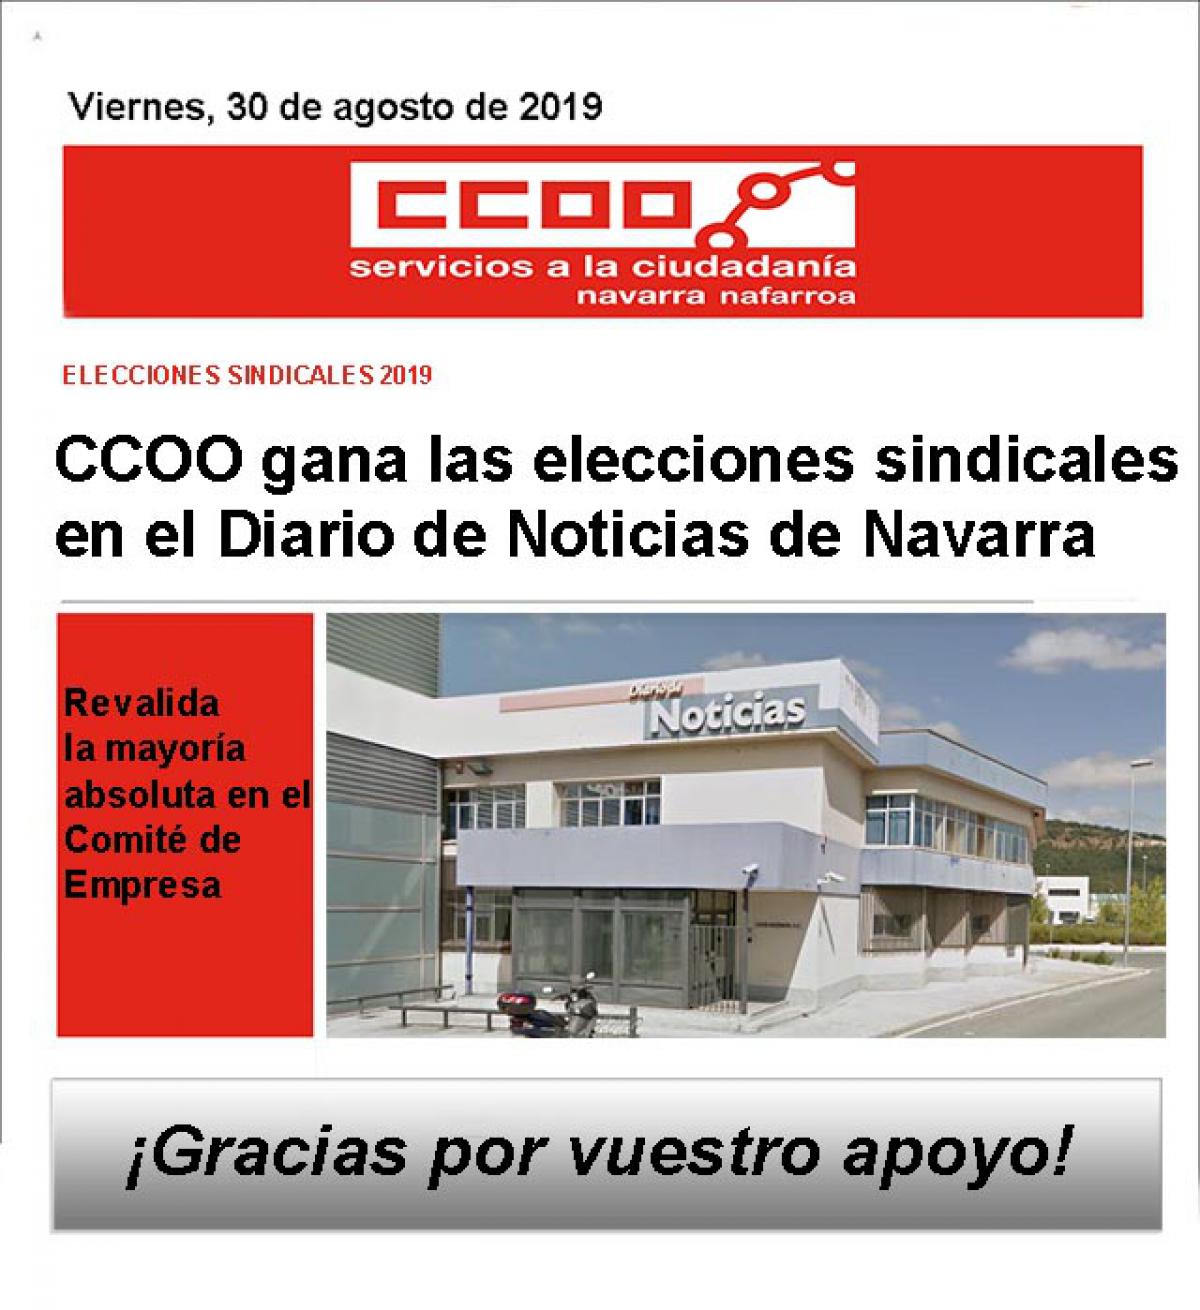 Elecciones sindicales 2019 Diario de Noticias de Navarra